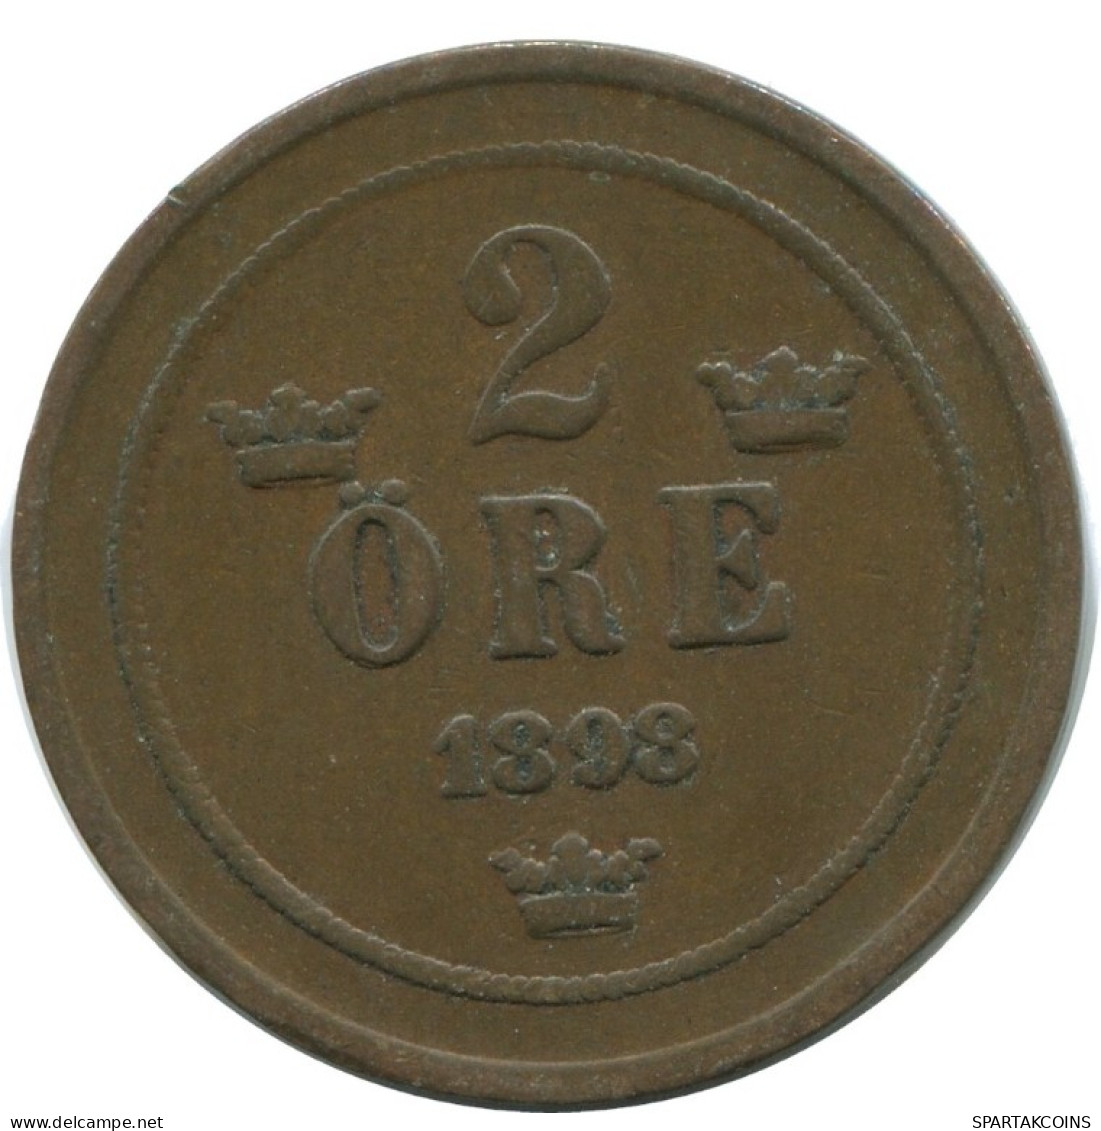 2 ORE 1898 SUECIA SWEDEN Moneda #AC965.2.E.A - Svezia